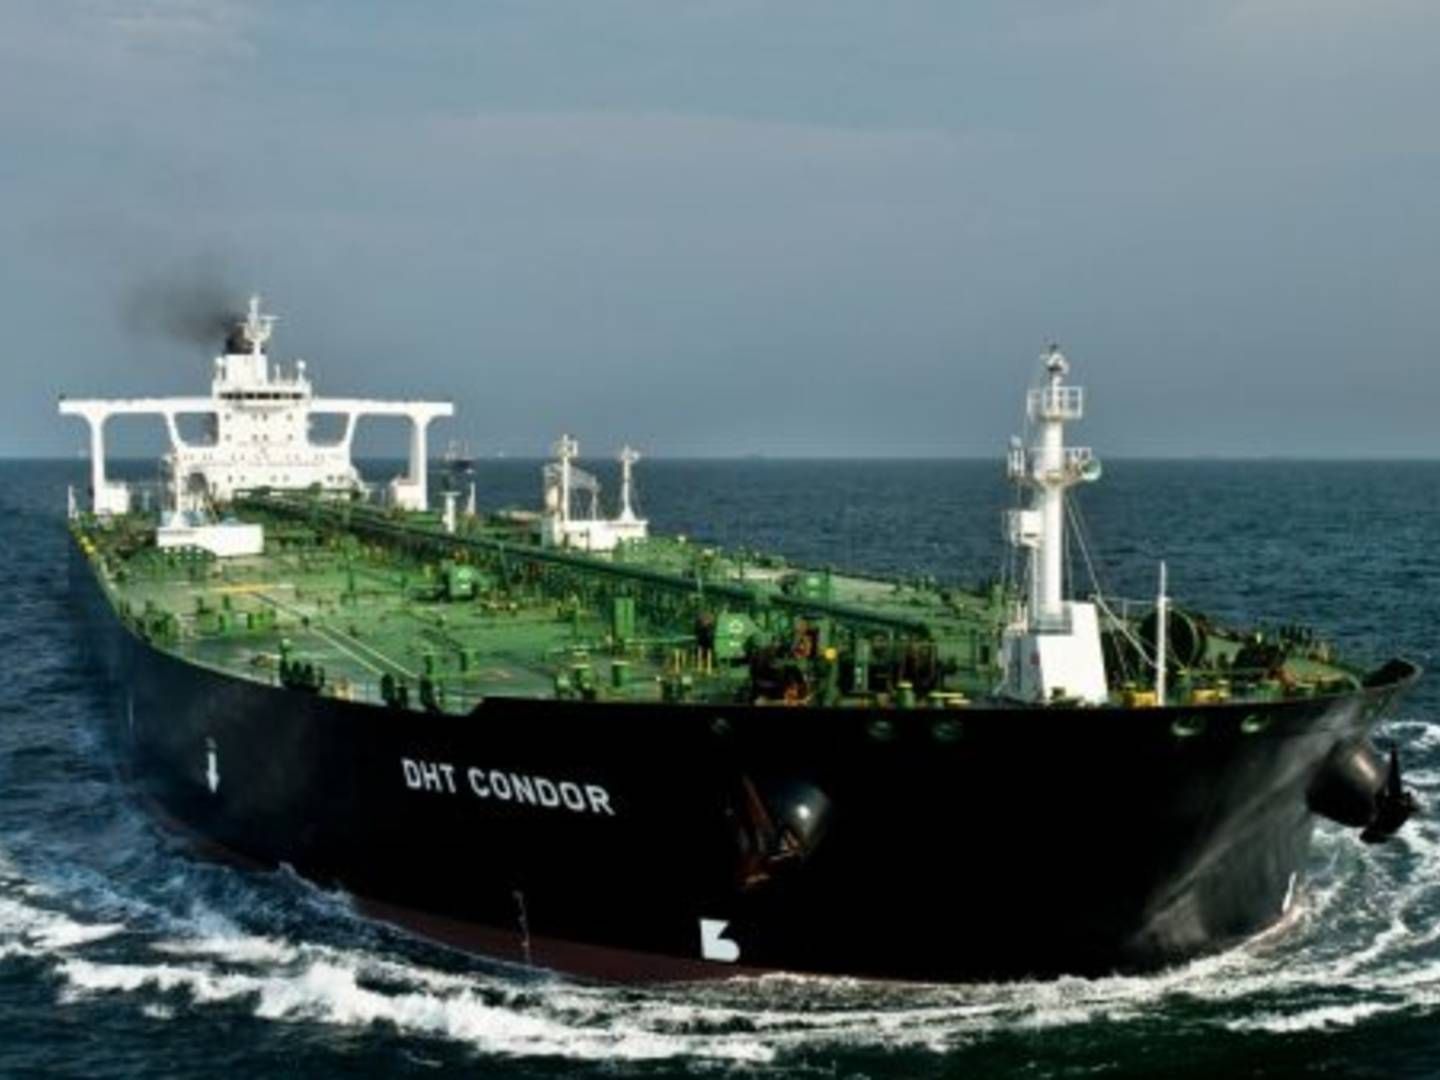 DHT Holdings rejser sammen med Frontline og Euronav kritik af et stigende antal "spøgelses-skibe" der sejler med sanktioneret olie. | Foto: DHT Holding / PR